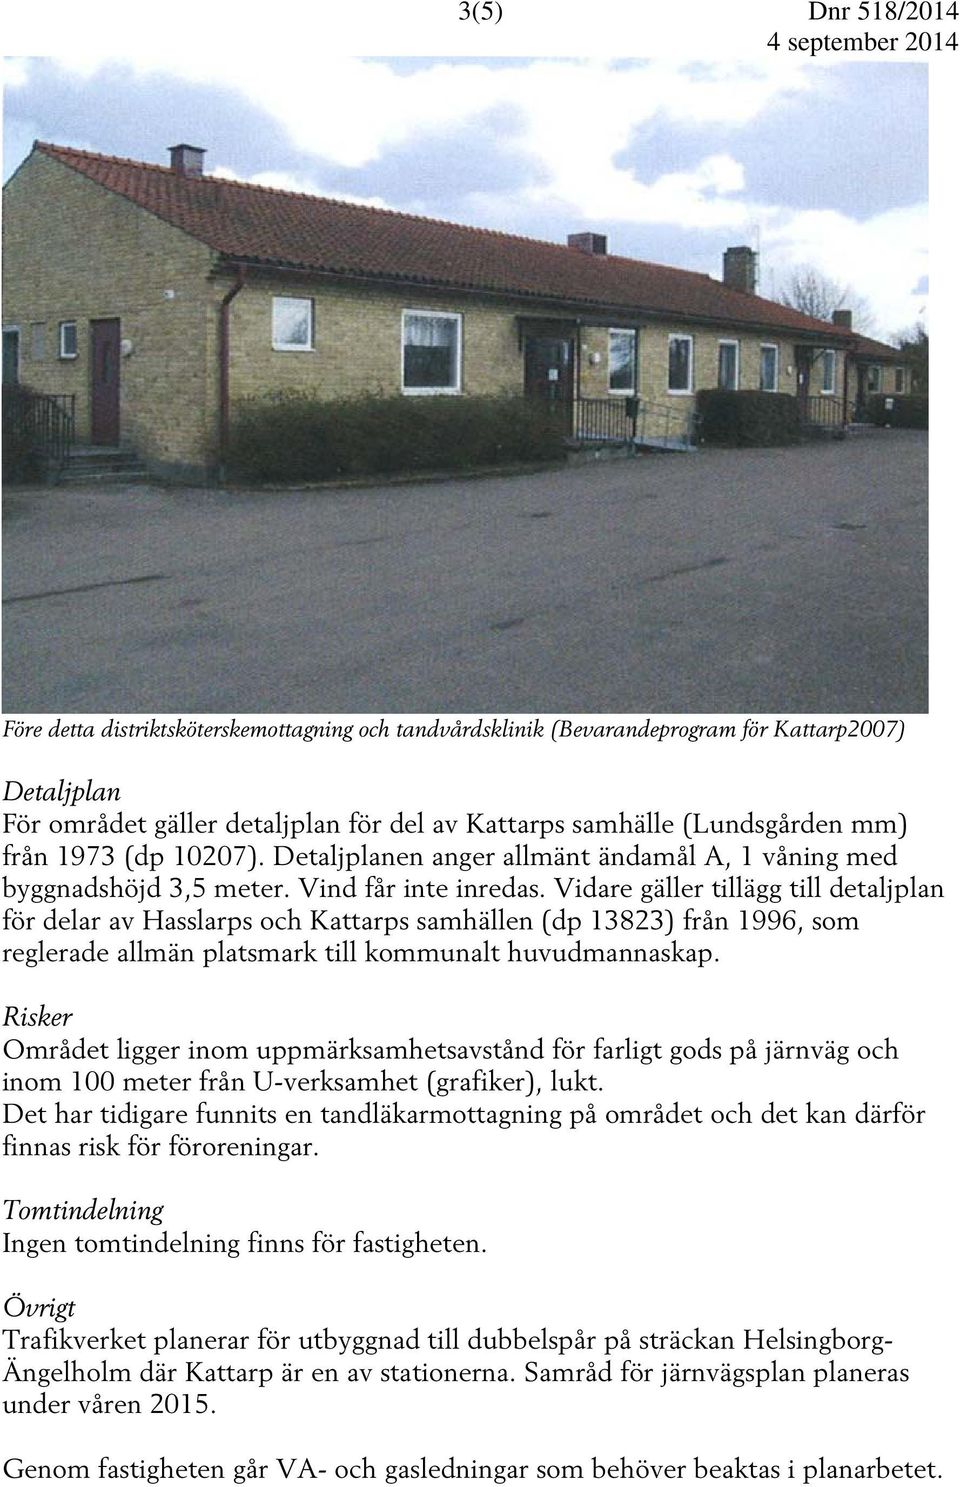 Vidare gäller tillägg till detaljplan för delar av Hasslarps och Kattarps samhällen (dp 13823) från 1996, som reglerade allmän platsmark till kommunalt huvudmannaskap.